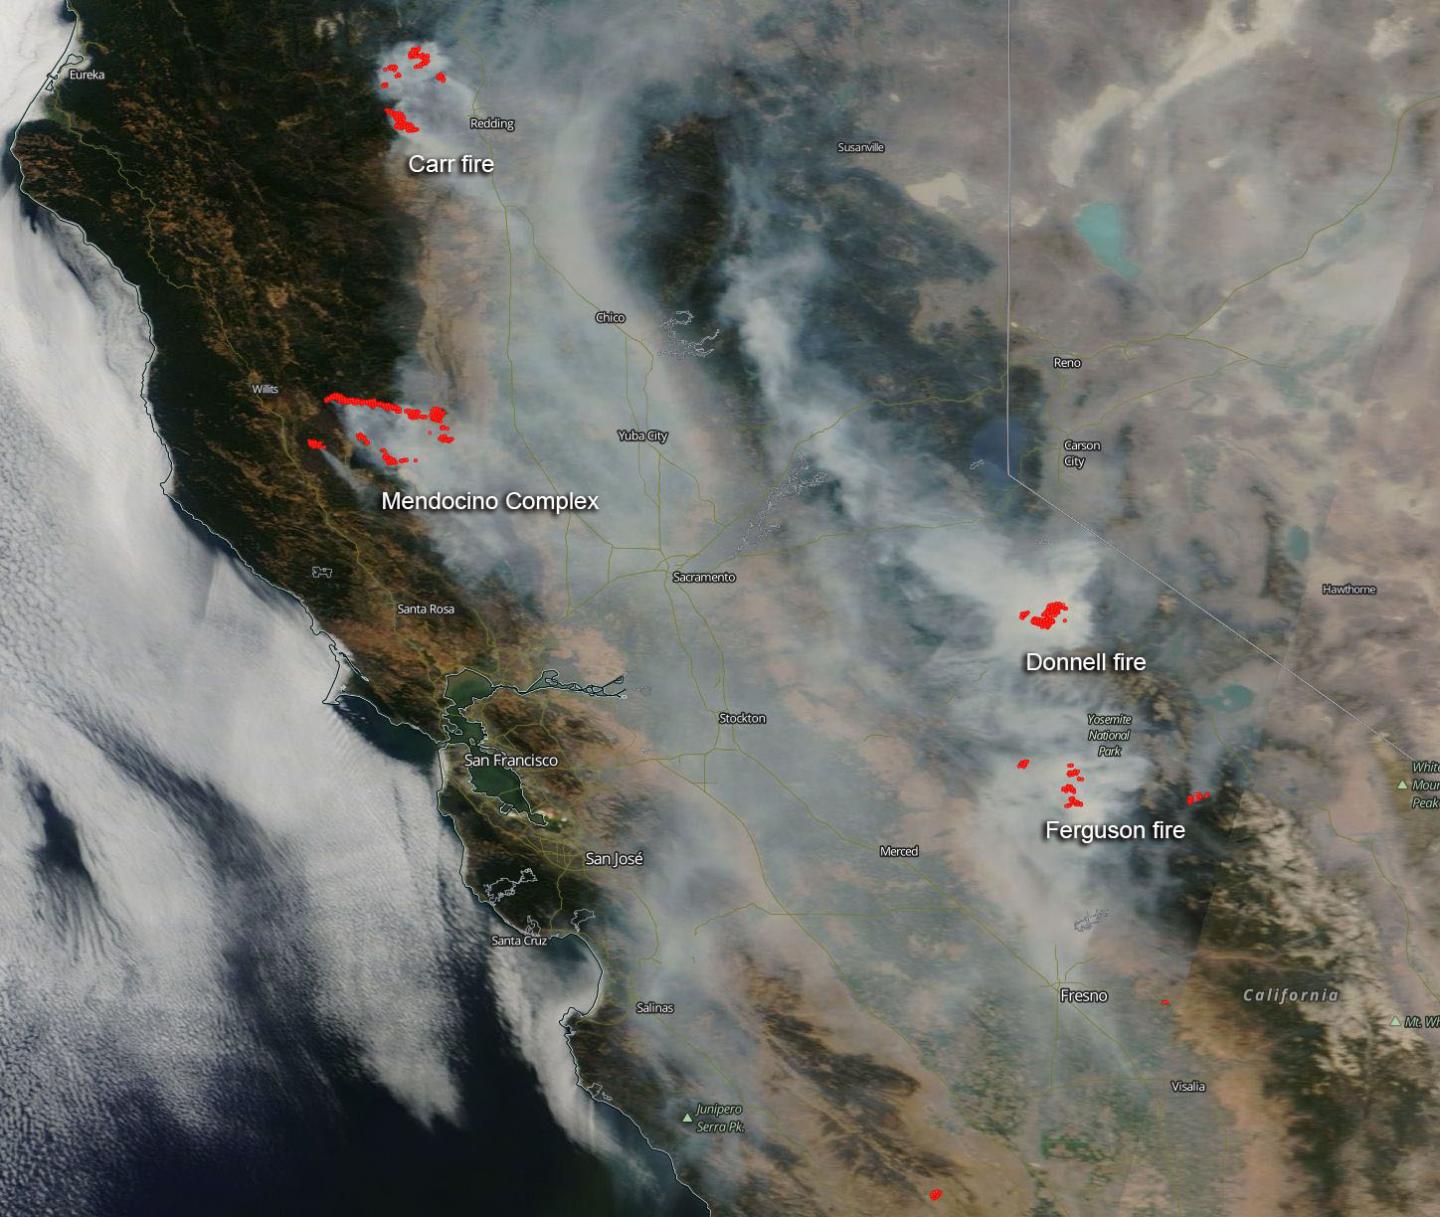 California's Fire Season in Full Swing